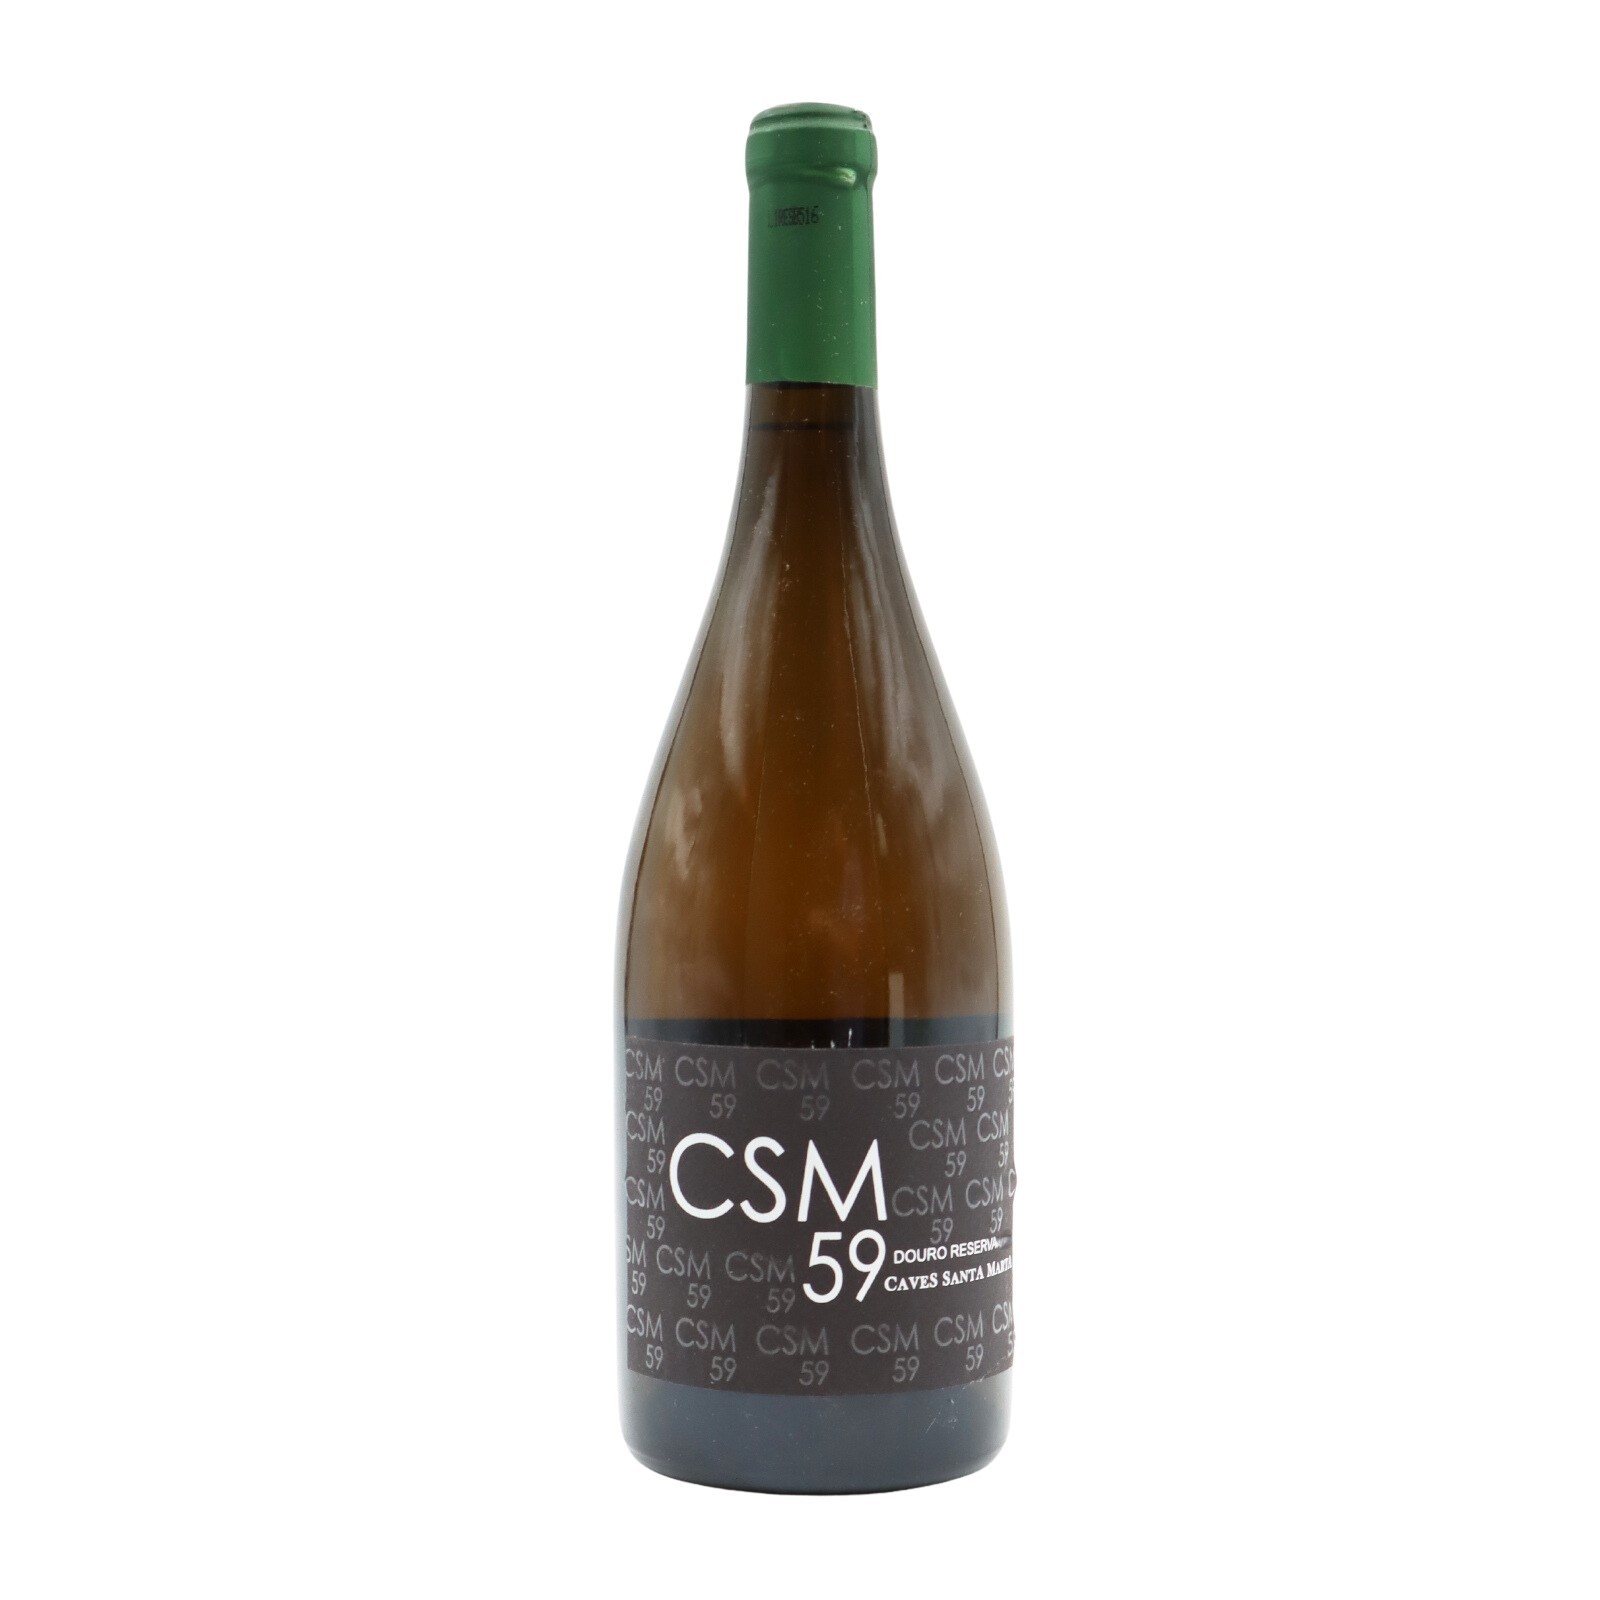 CSM 59 Réserve Blanc 2015